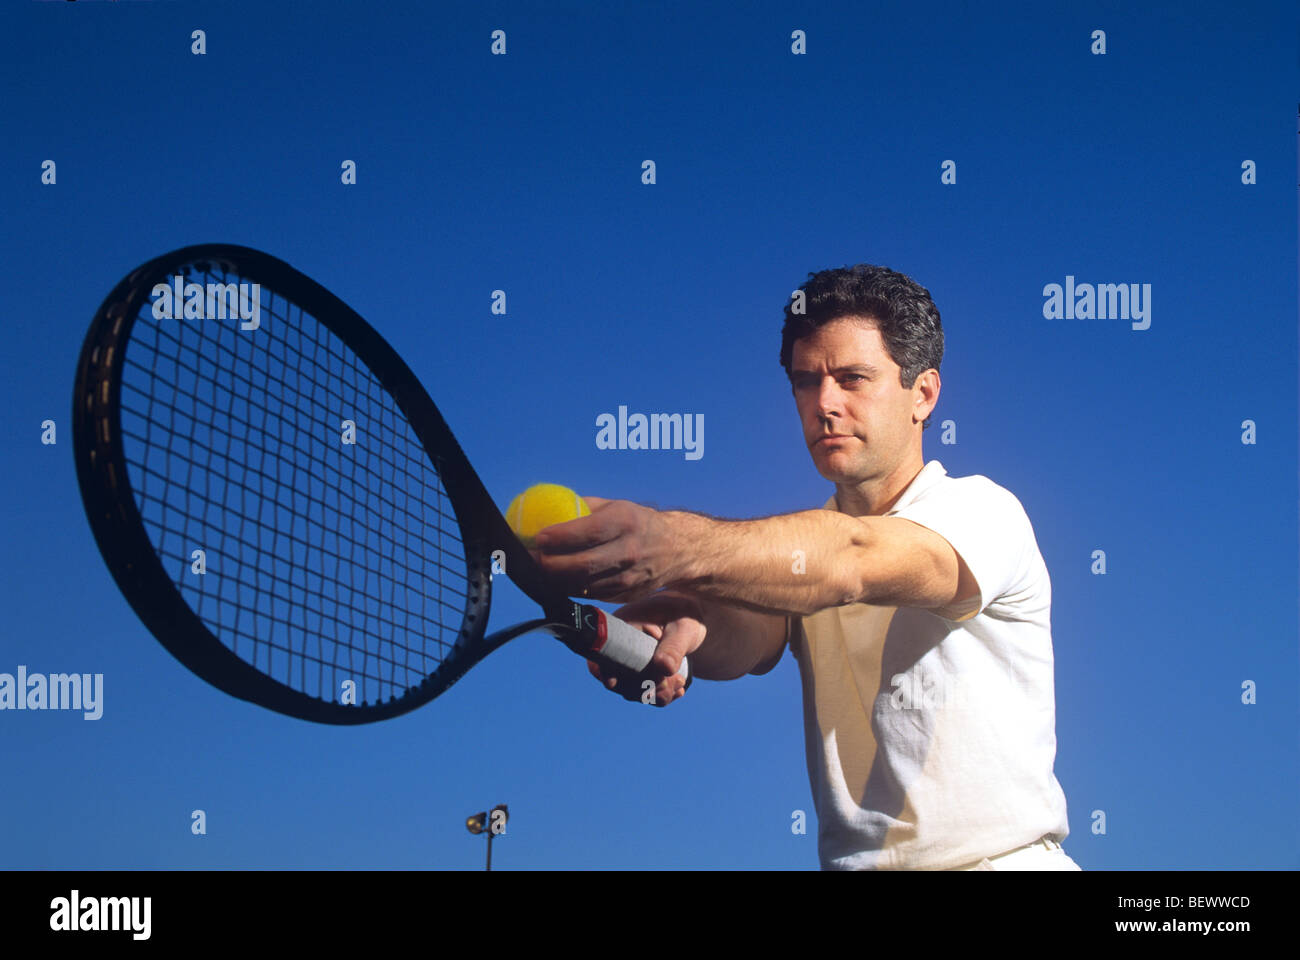 Joueur de tennis se préparer à servir Banque D'Images